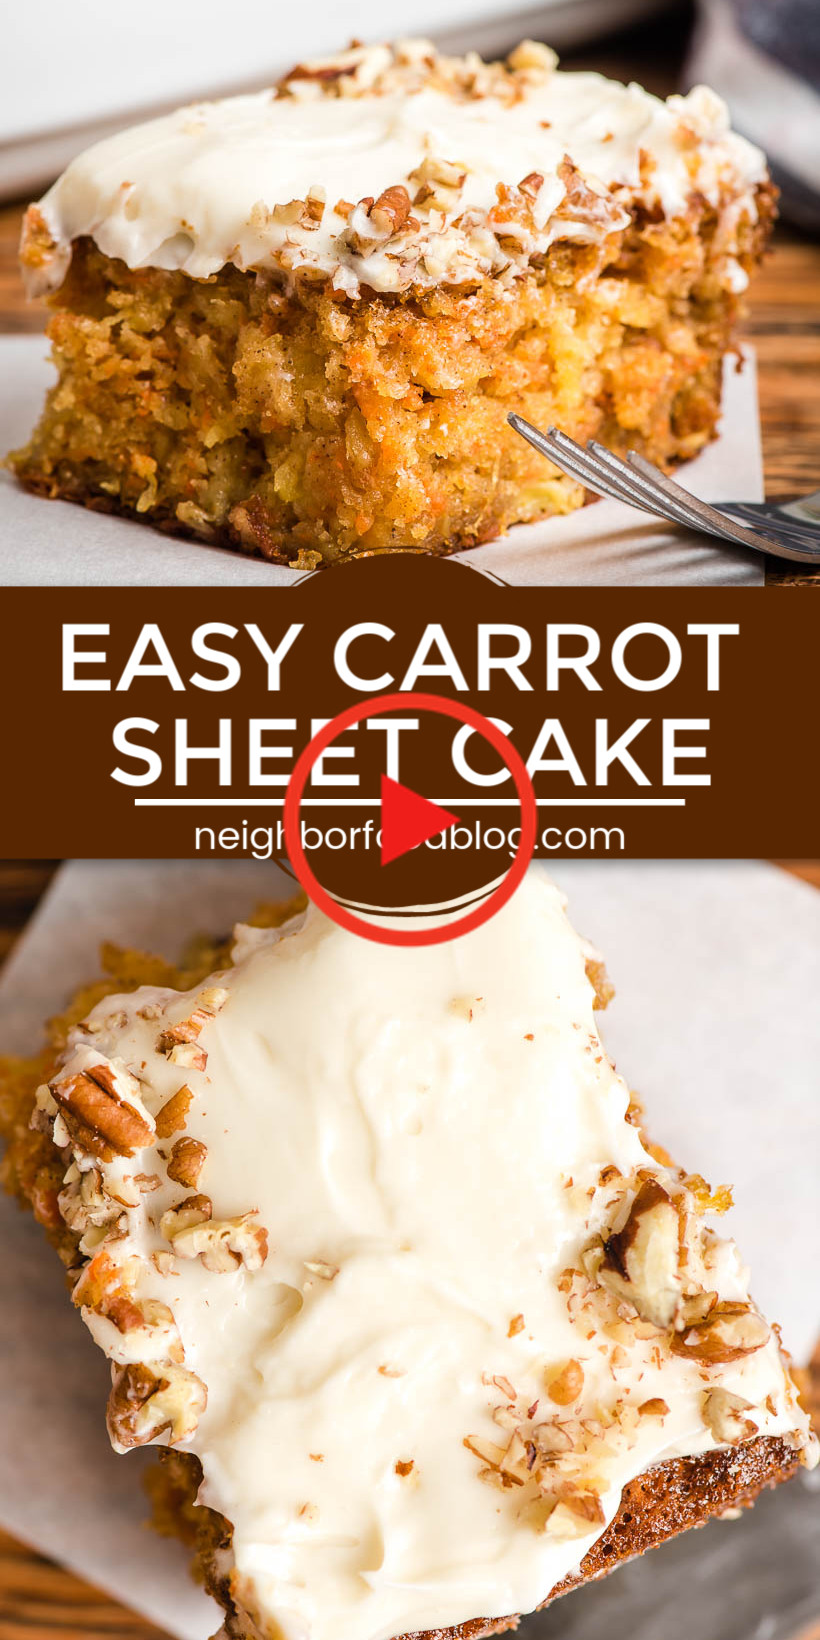 Gourmet Carrot Cake Recipes
 Easy Carrot Sheet Cake in 2020